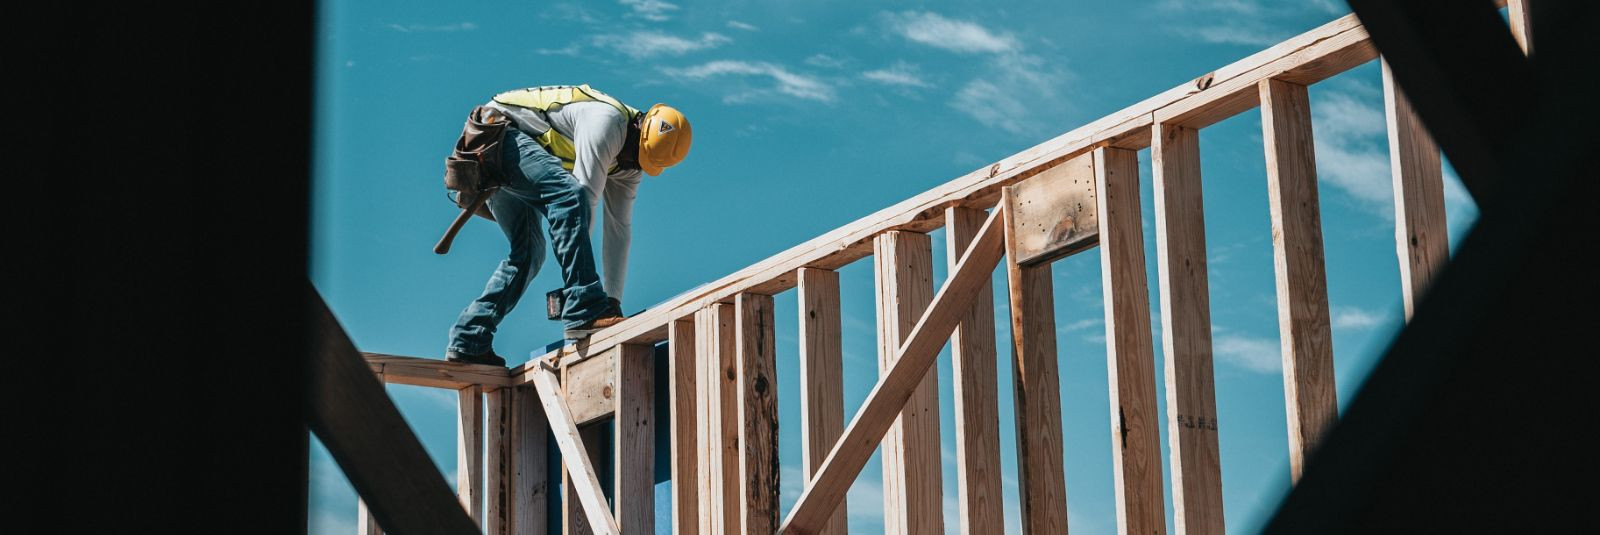 Ehitus- ja remonditööd on olulised, et hoida meie kodud ja ärihooned kaasaegsetena ning vastavuses muutuvate vajaduste ja standarditega. Kuid sageli võib ehitus